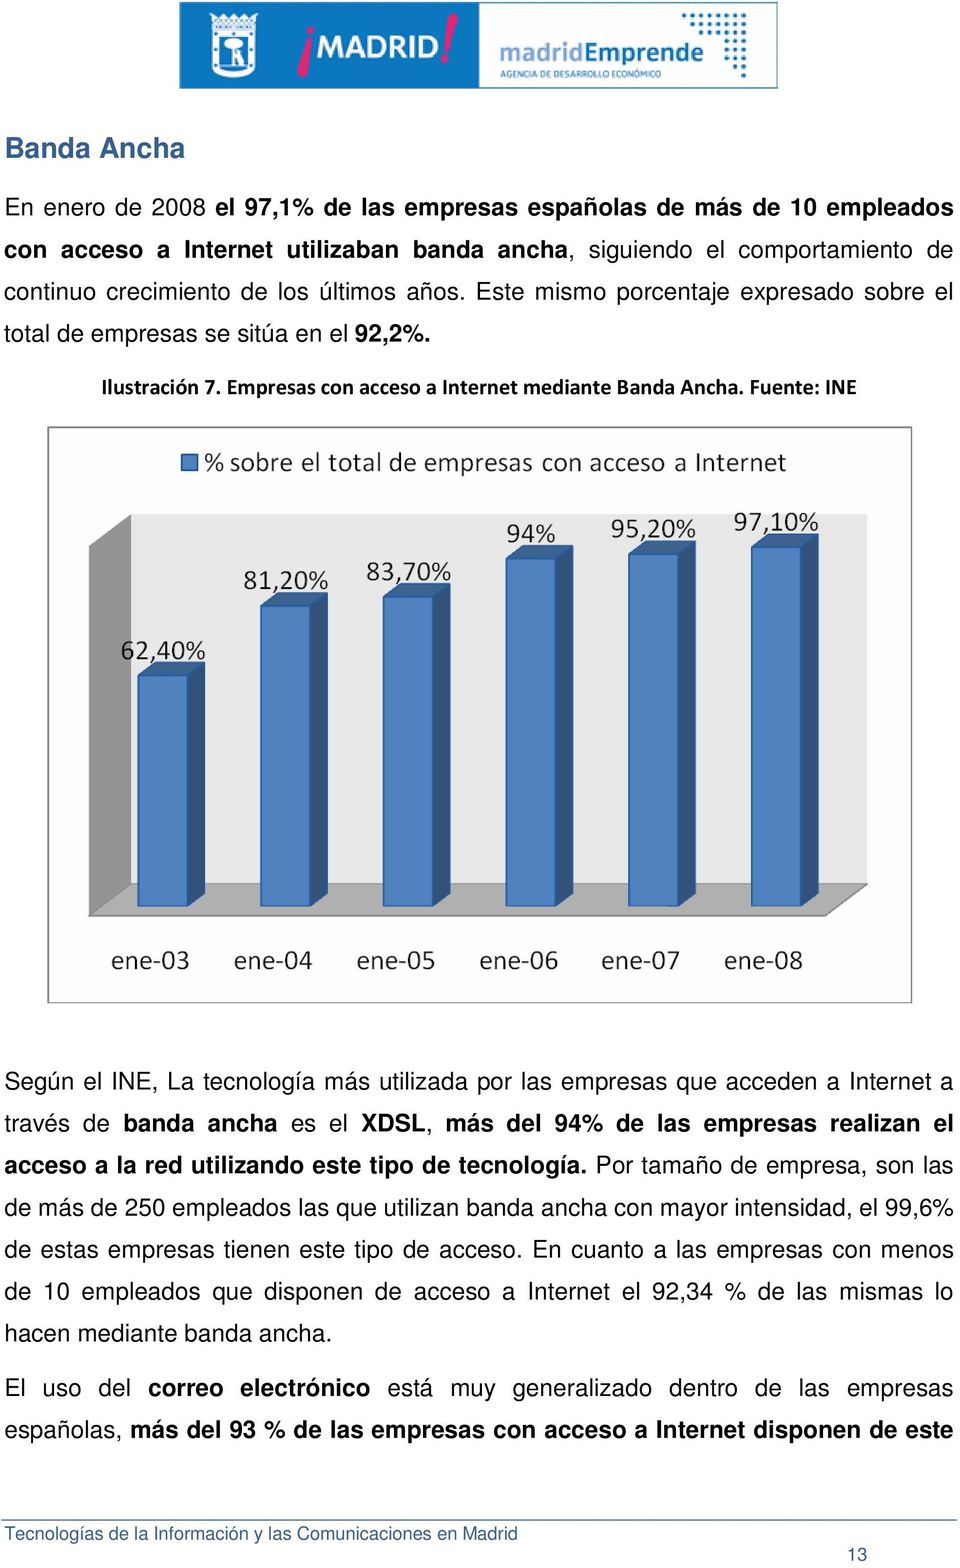 Fuente: INE Según el INE, La tecnología más utilizada por las empresas que acceden a Internet a través de banda ancha es el XDSL, más del 94% de las empresas realizan el acceso a la red utilizando